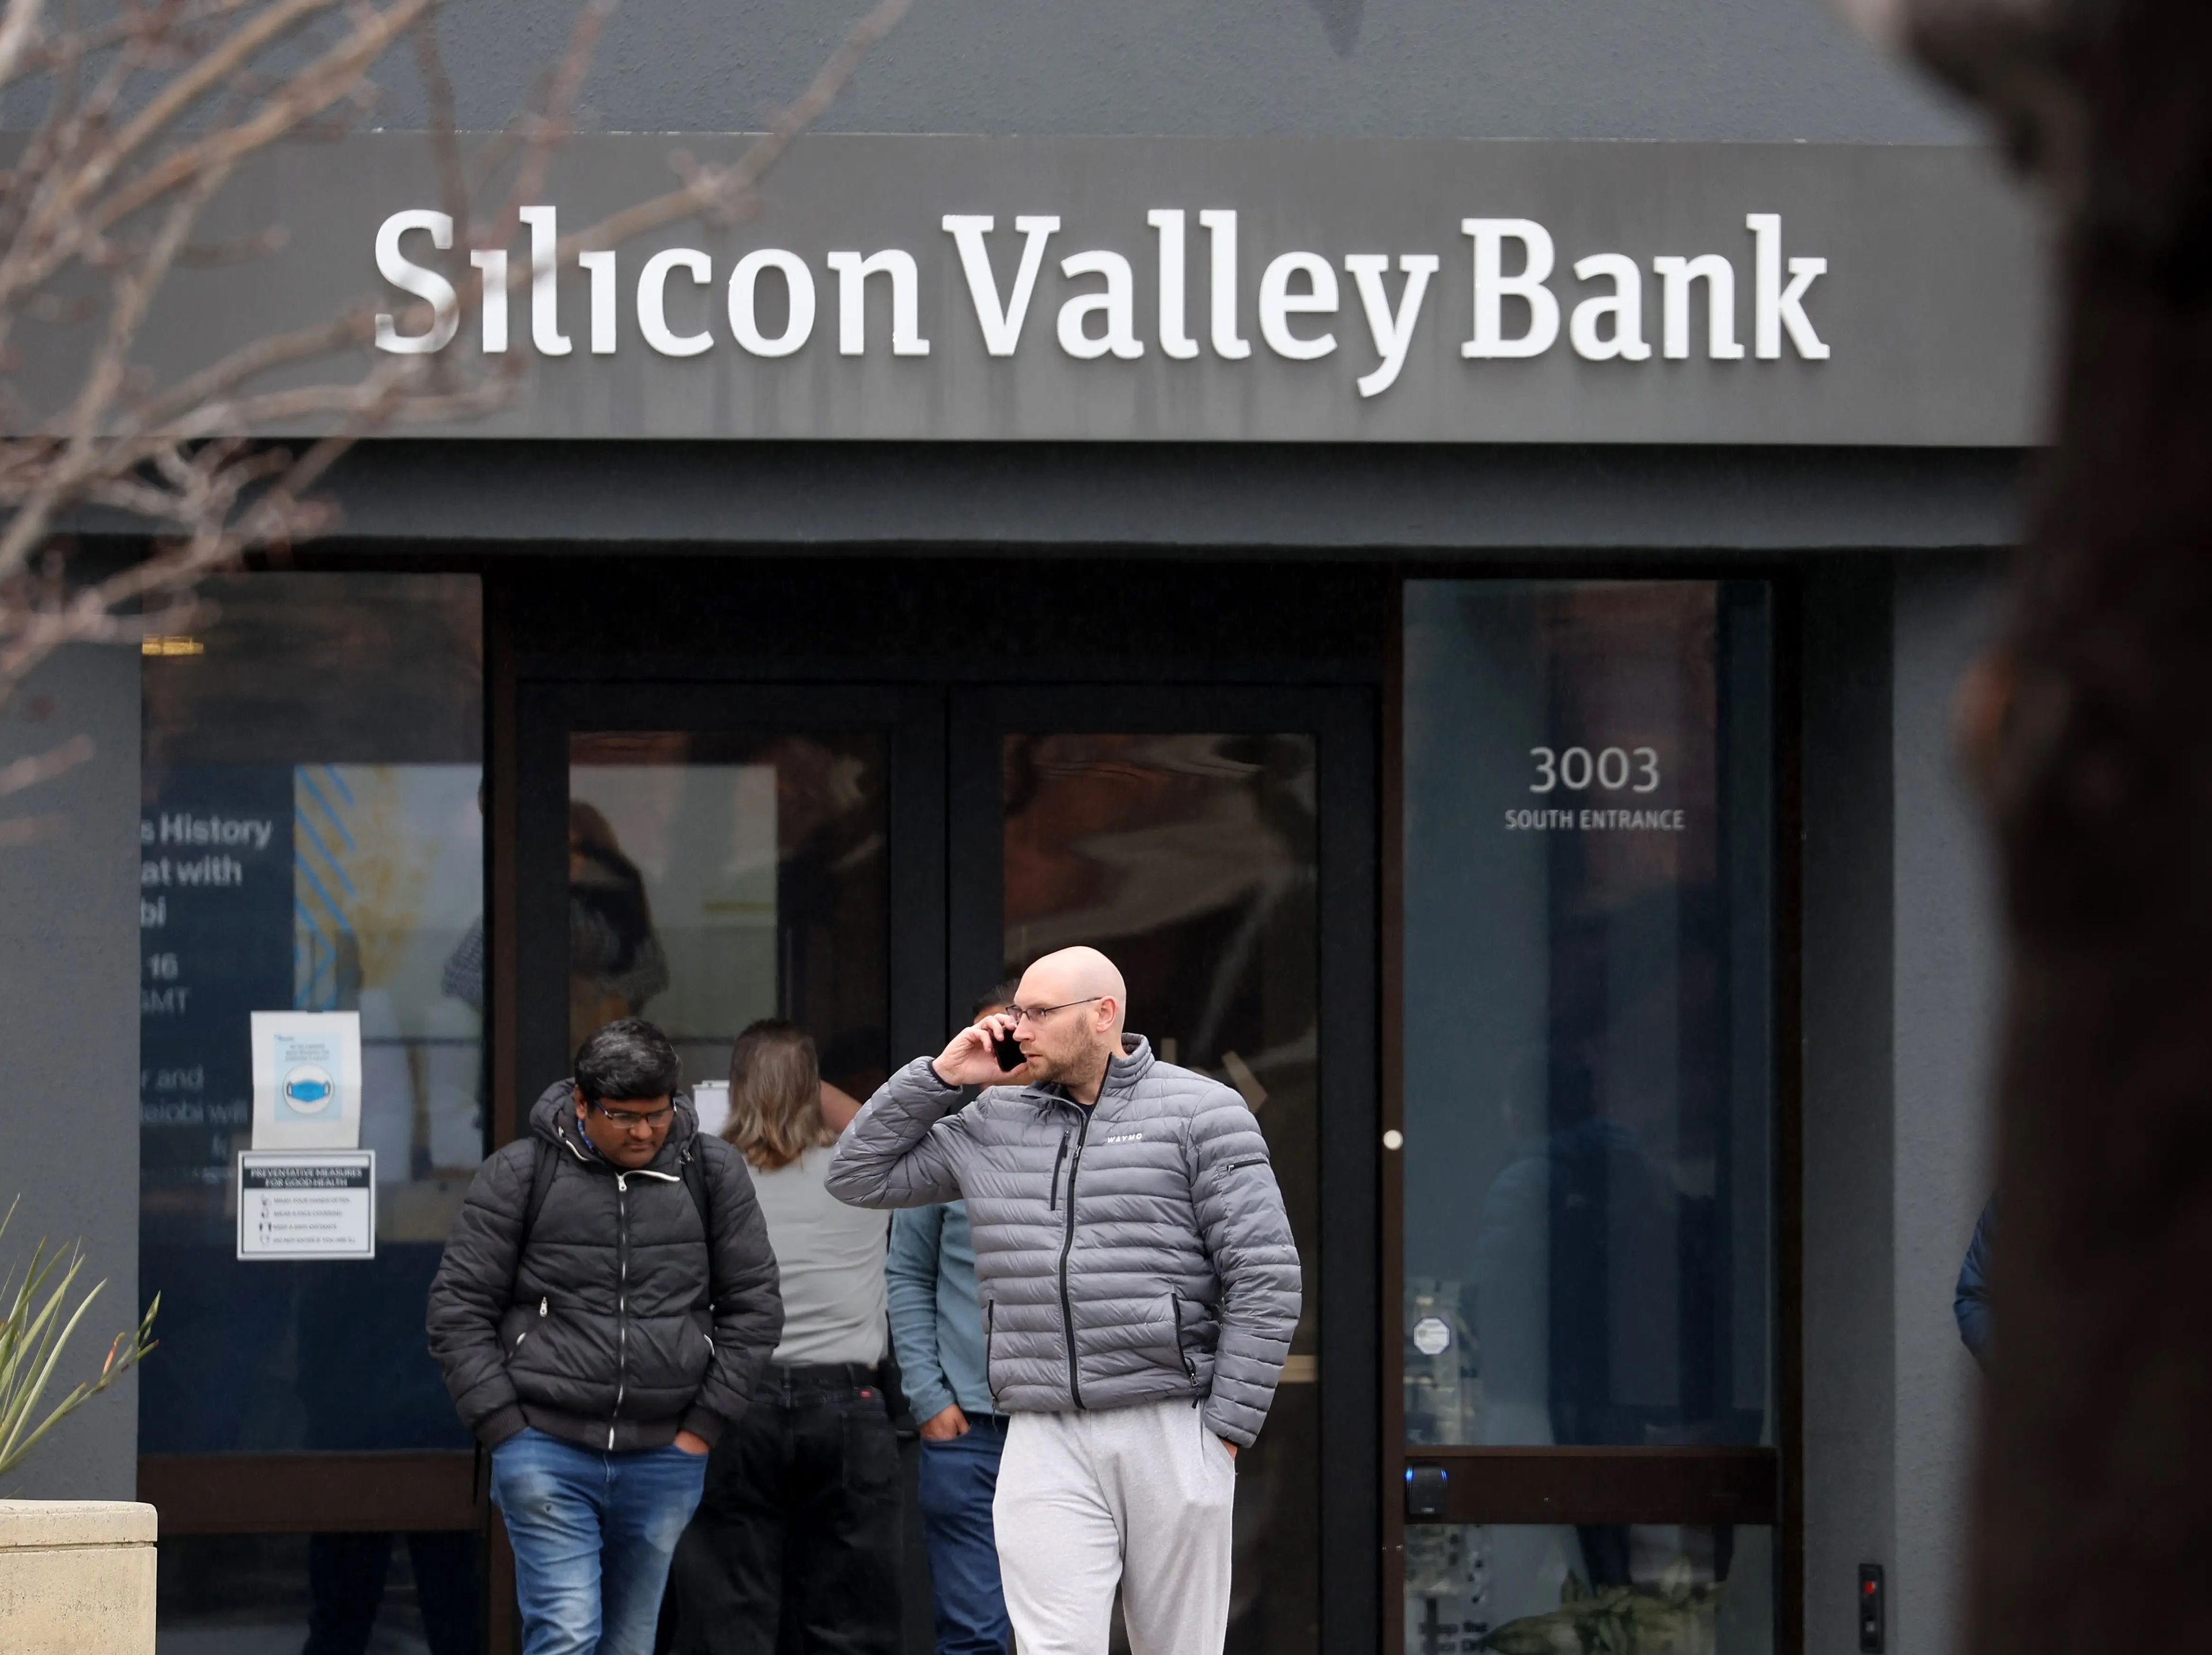 Empleados fuera de la sede de Silicon Valley Bank en Santa Clara, California, Estados unidos, el 10 de marzo de 2023 tras la intervención de los reguladores.